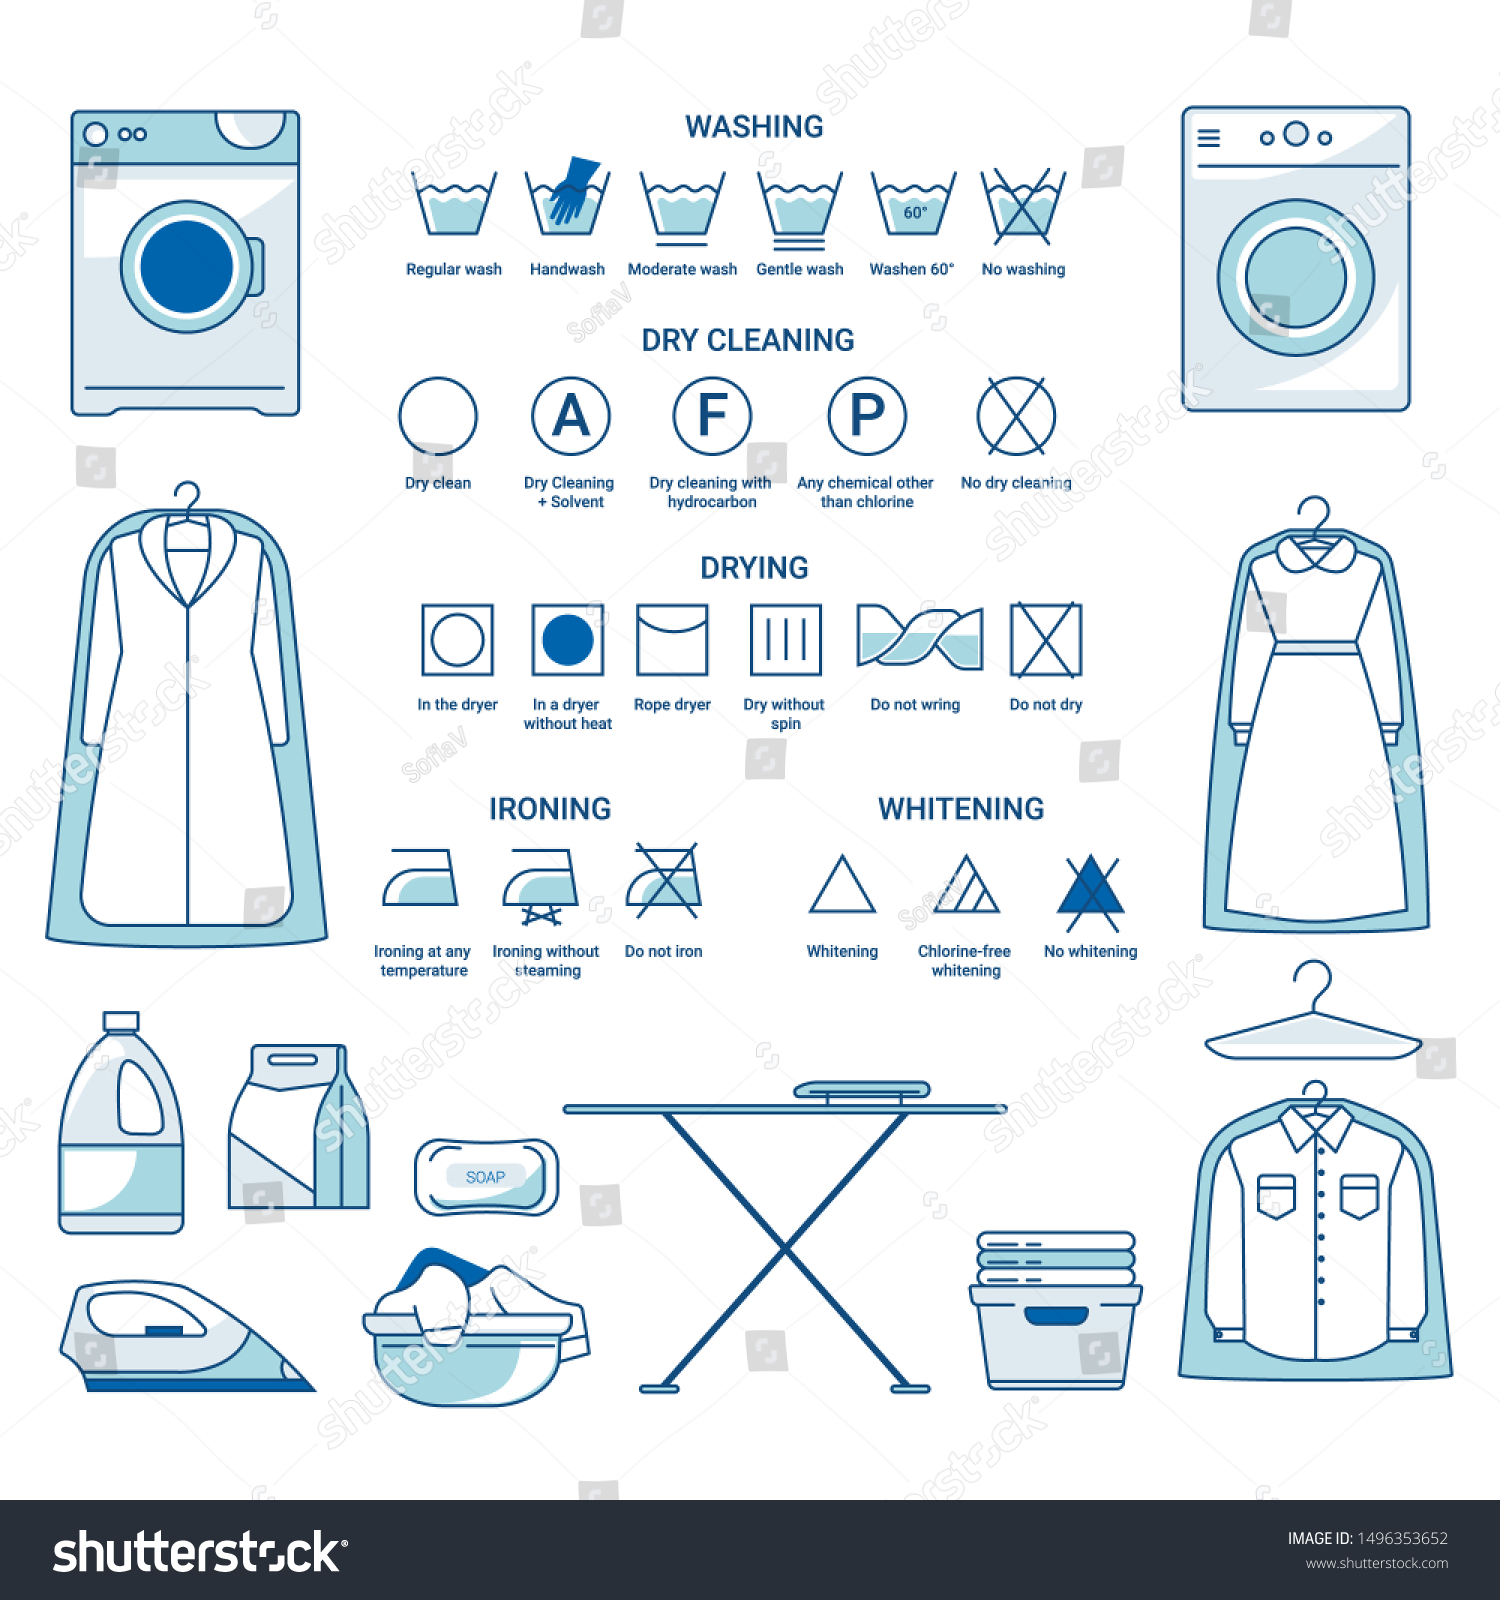 Какое приложение стирает одежду